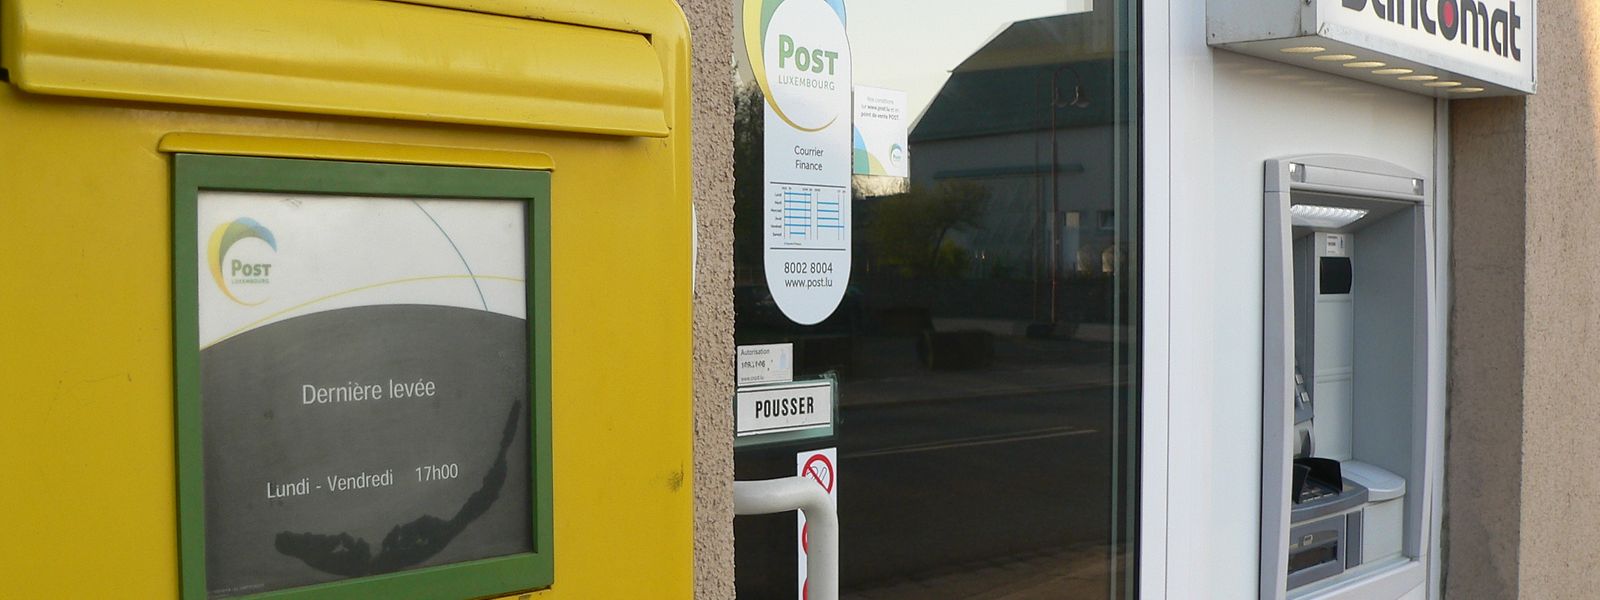 Am 1. Mai 2019 hat das Postamt in Hosingen seine Türen definitiv geschlossen. Dieses Beispiel steht stellvertretend für das Filialsterben staatlicher Dienstleister im ländlichen Raum